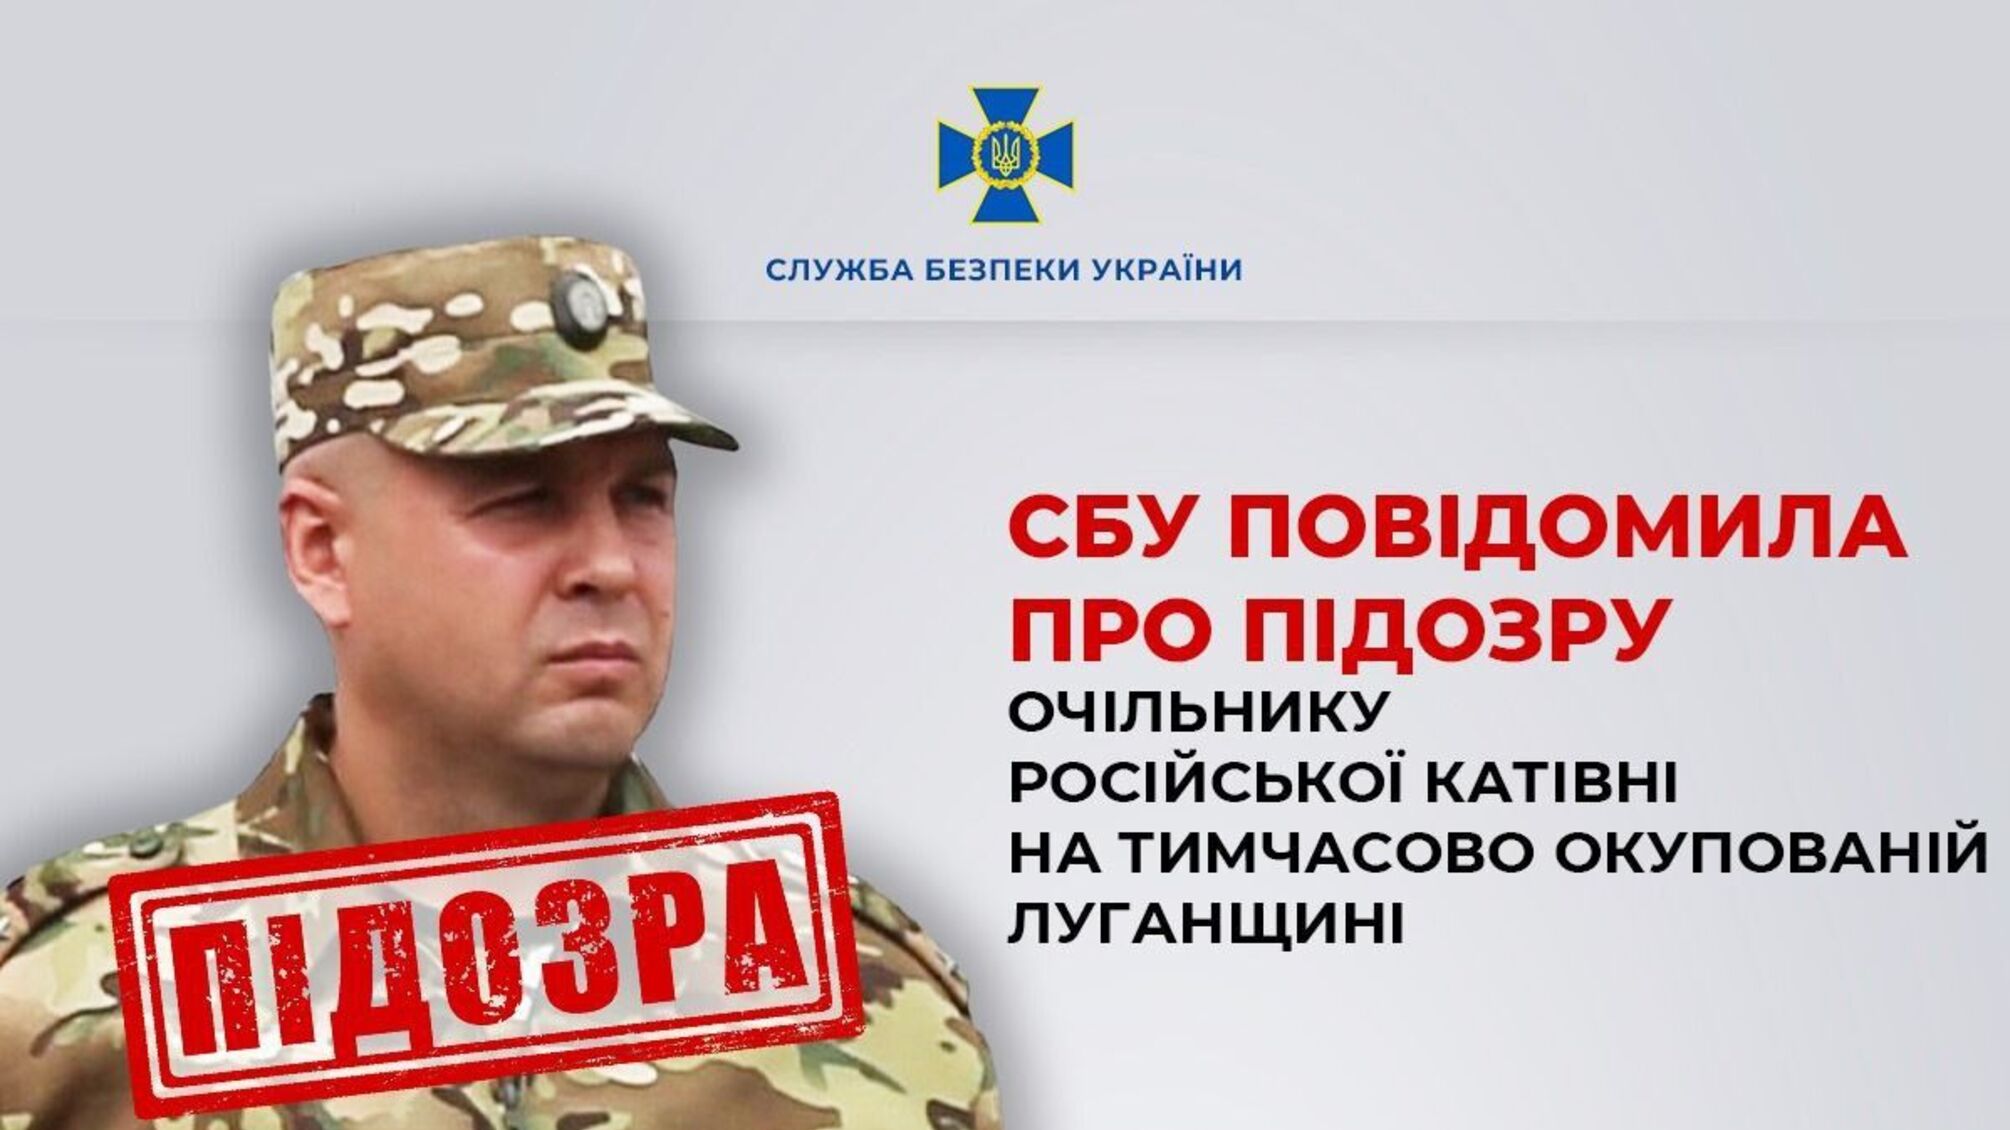 СБУ объявила подозрение главе российской застенки в Луганской области